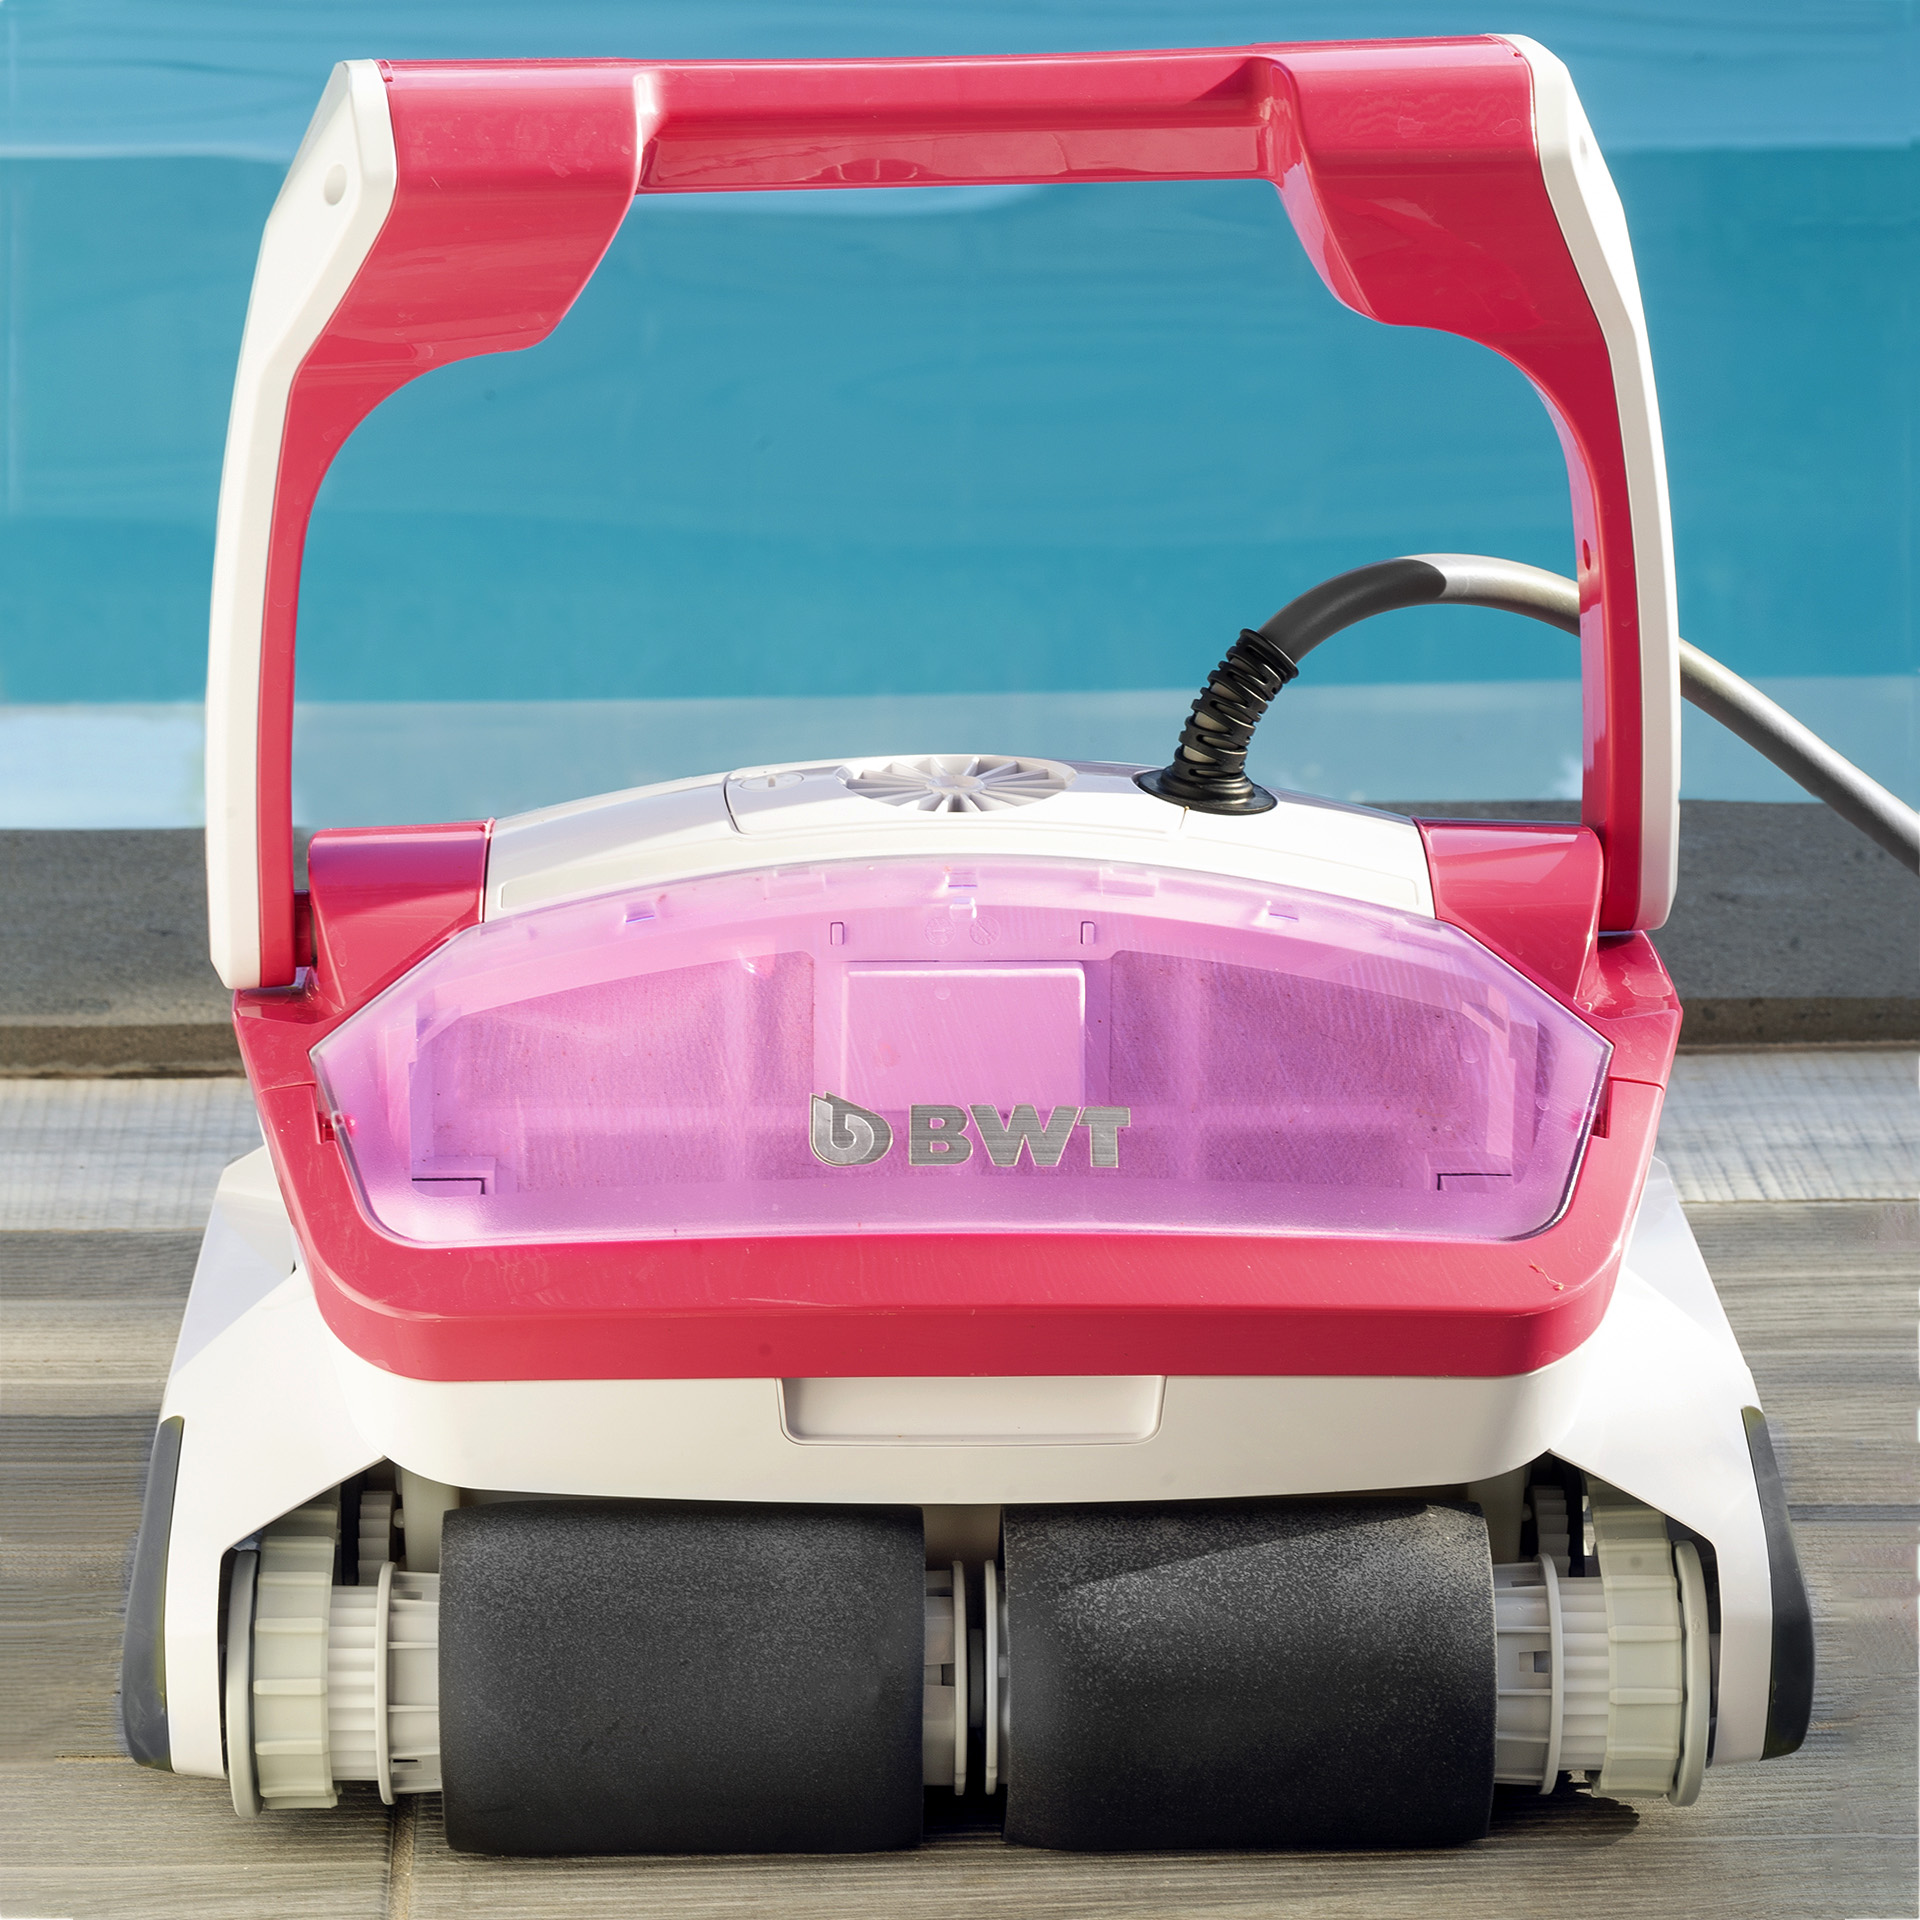 Un robot nettoyeur de piscine à LED